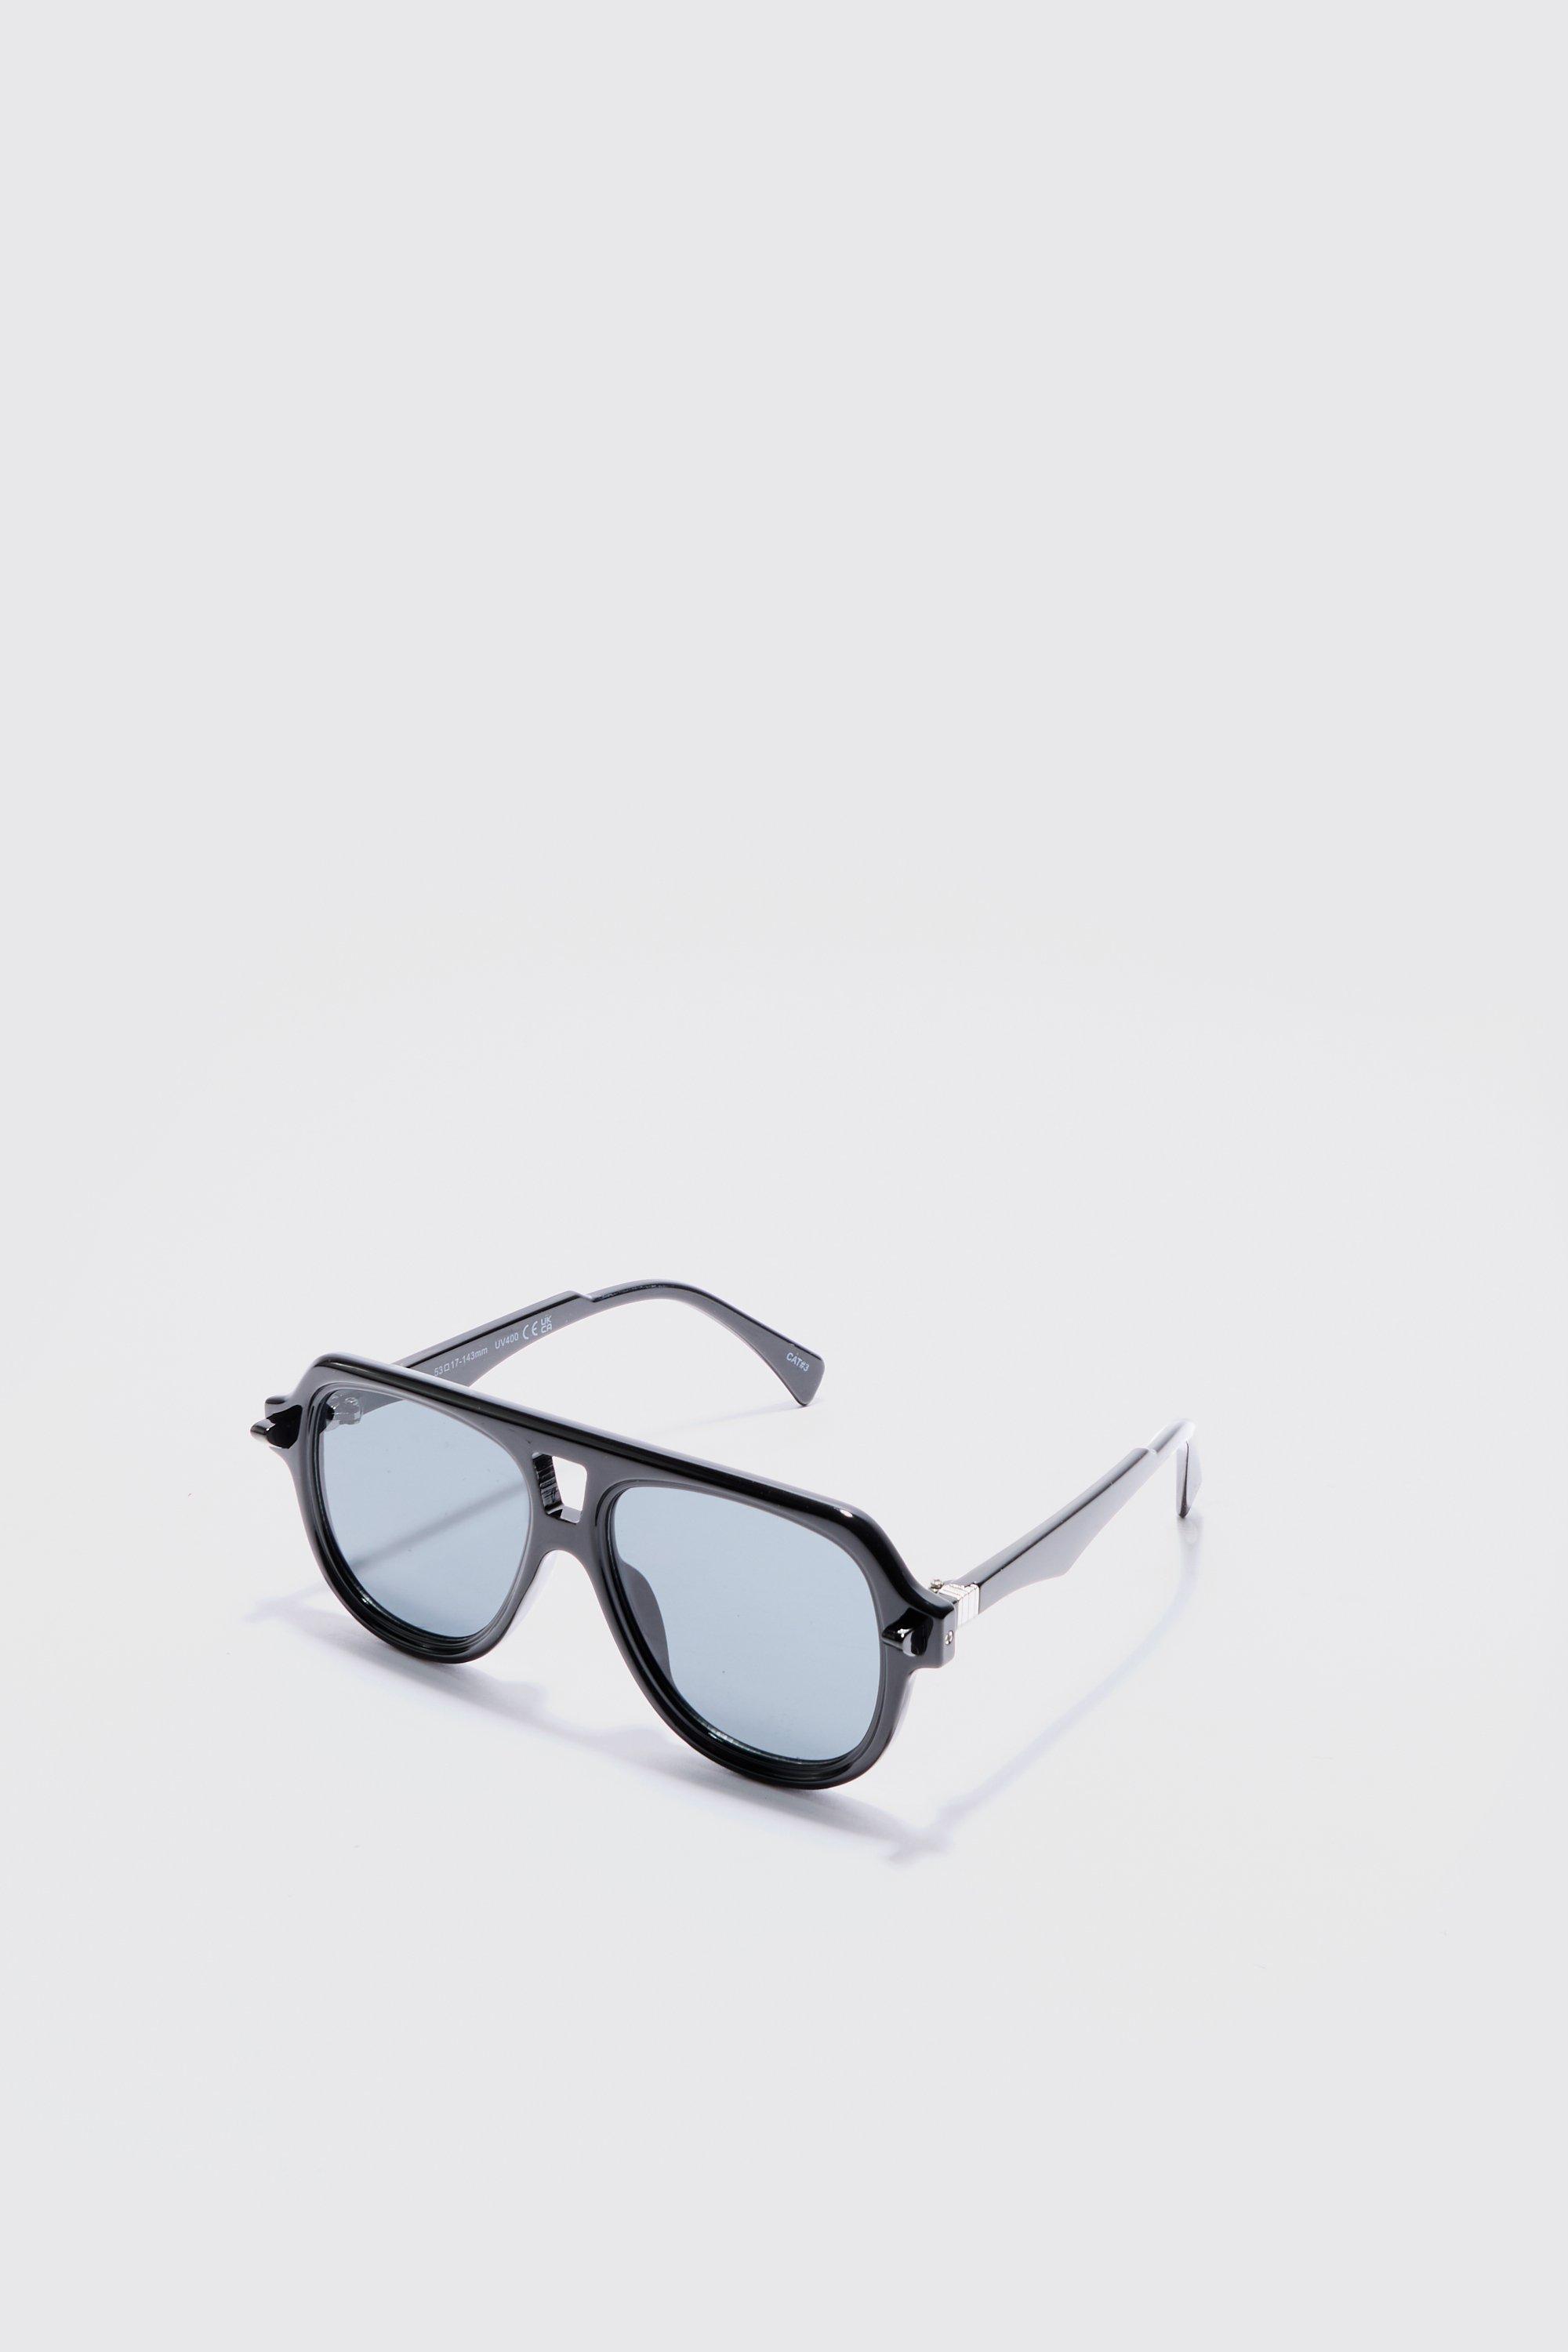 Image of Plastic Aviator Sunglasses In Black, Nero